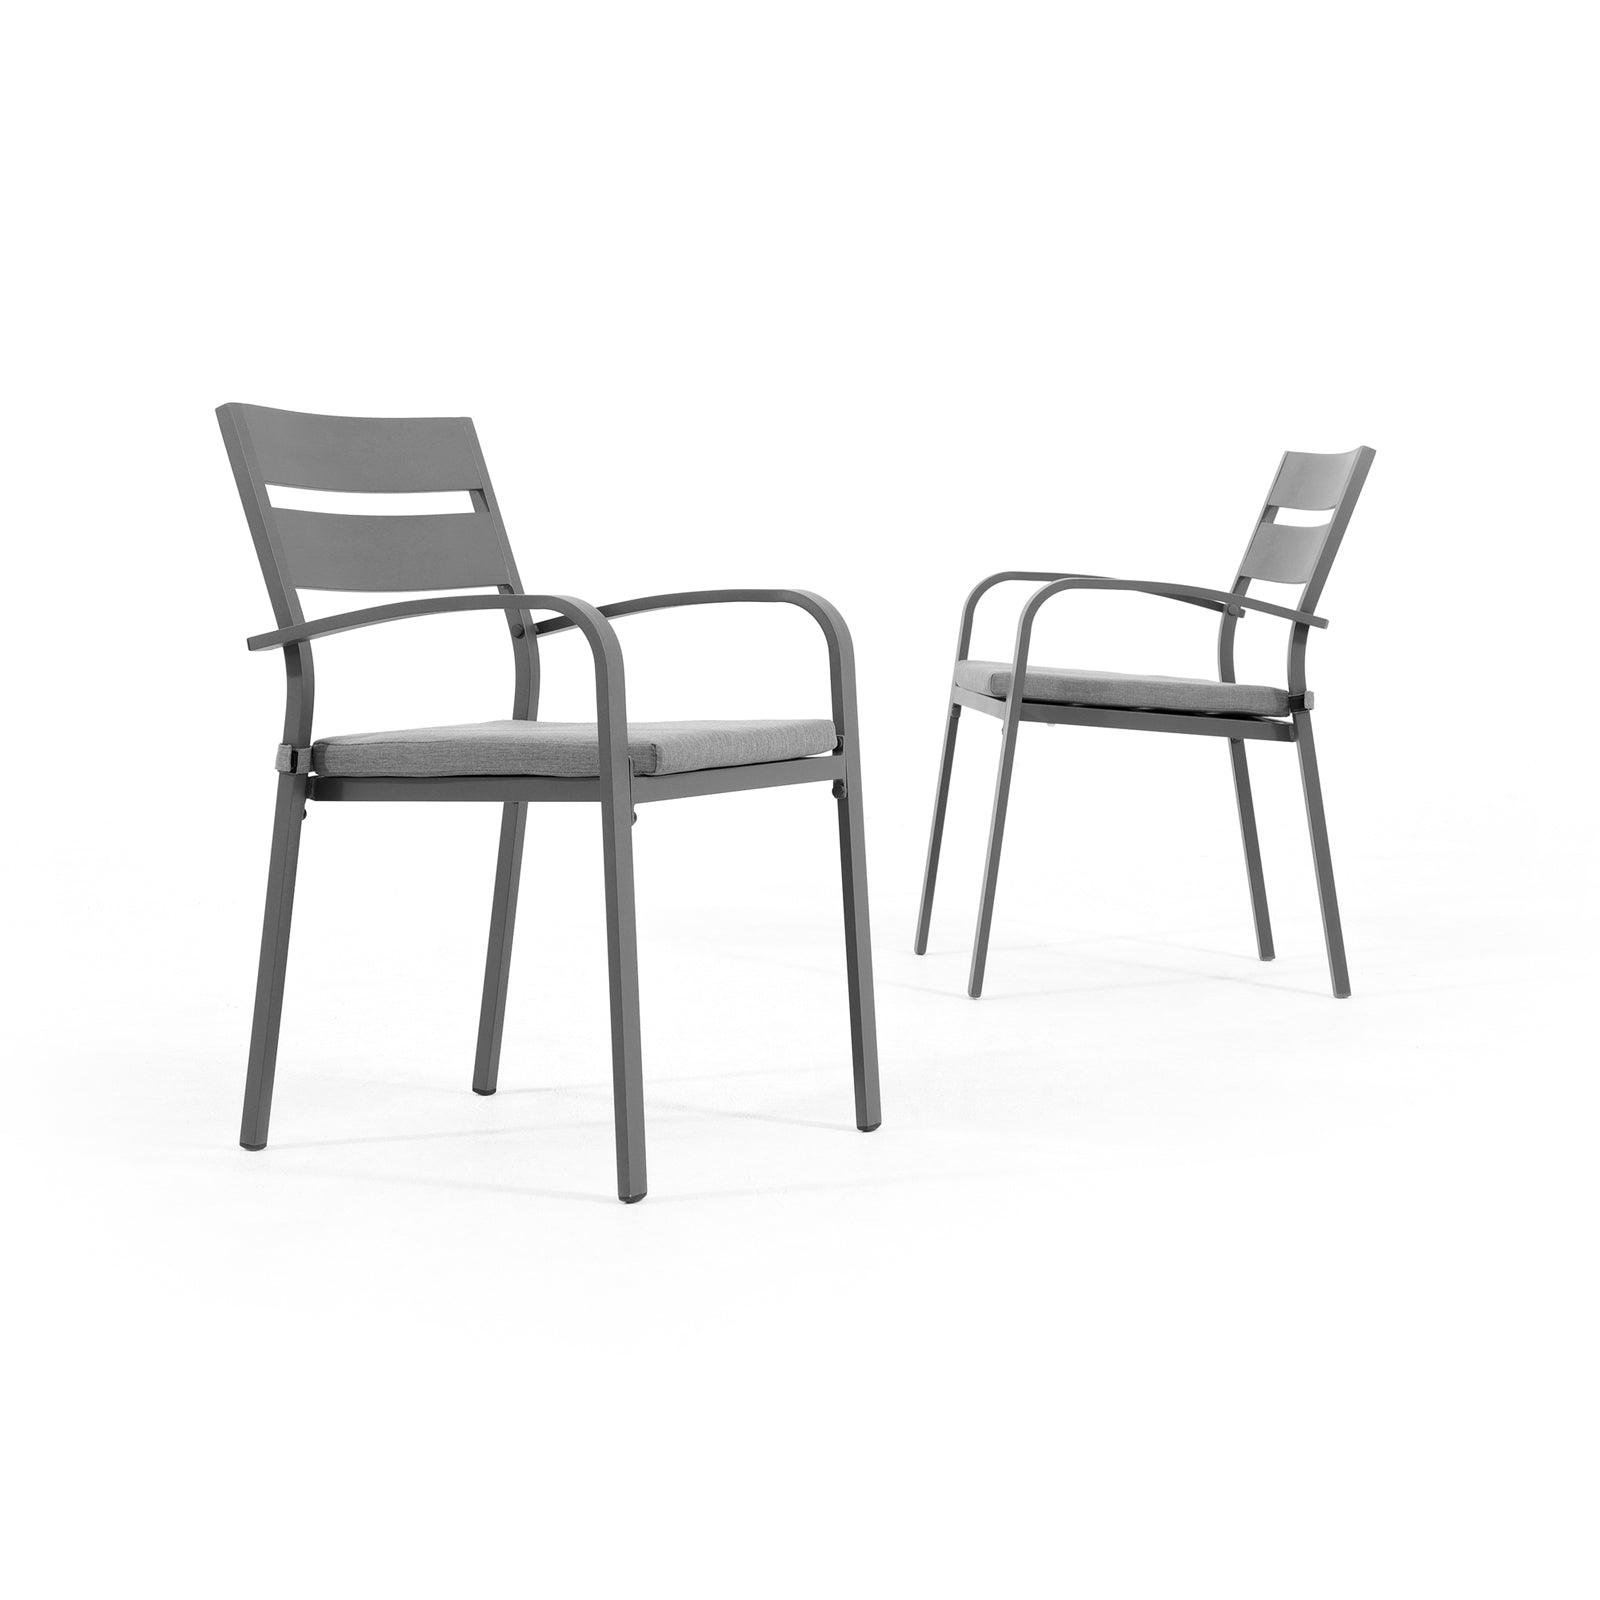 Salina 2 piece grey outdoor Stackable Metal Dining Chairs, grey cushions - Jardina Furniture#color_Dark Grey